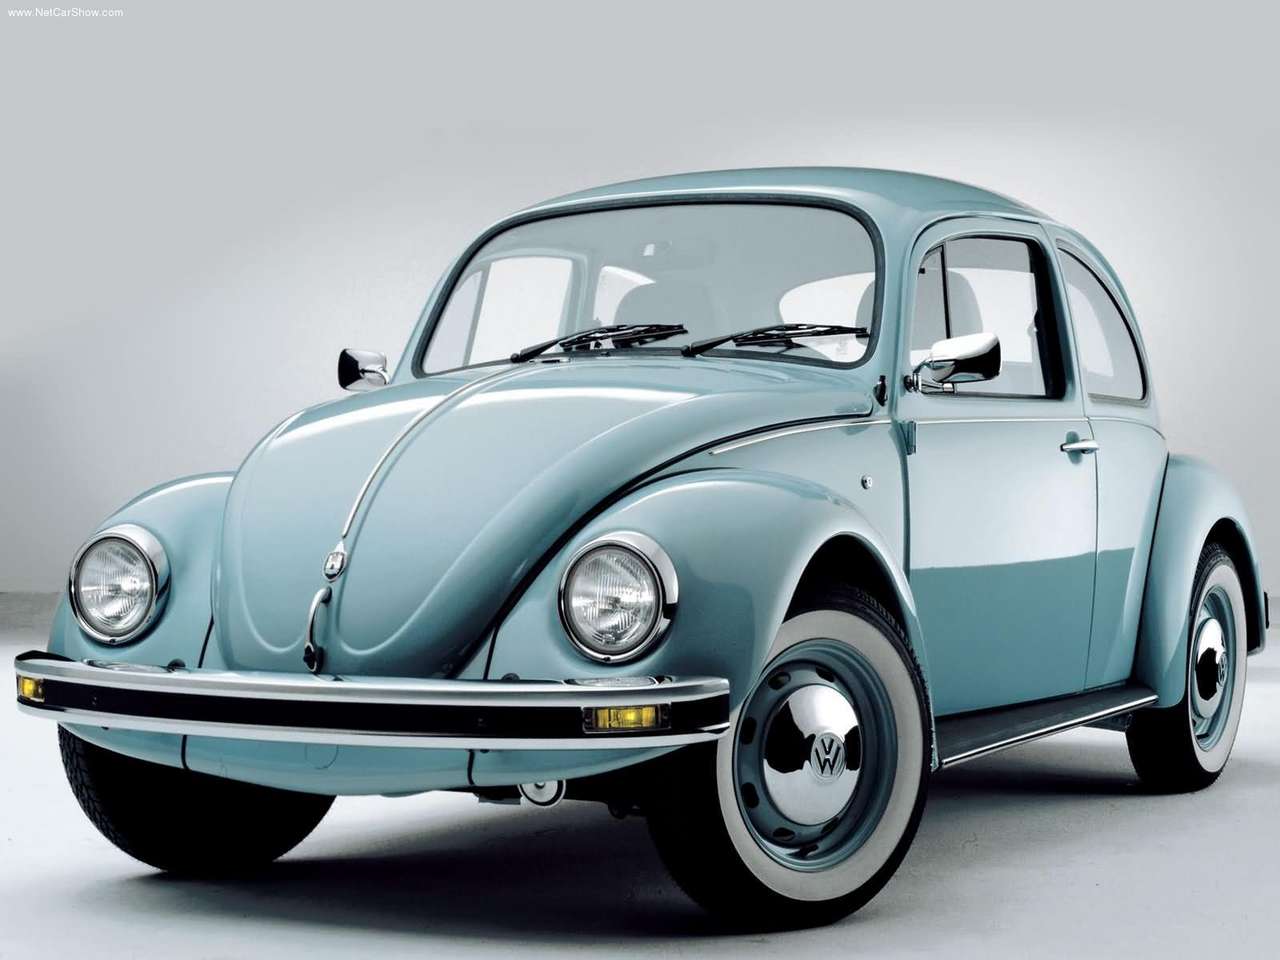  En sağlam VW modeli